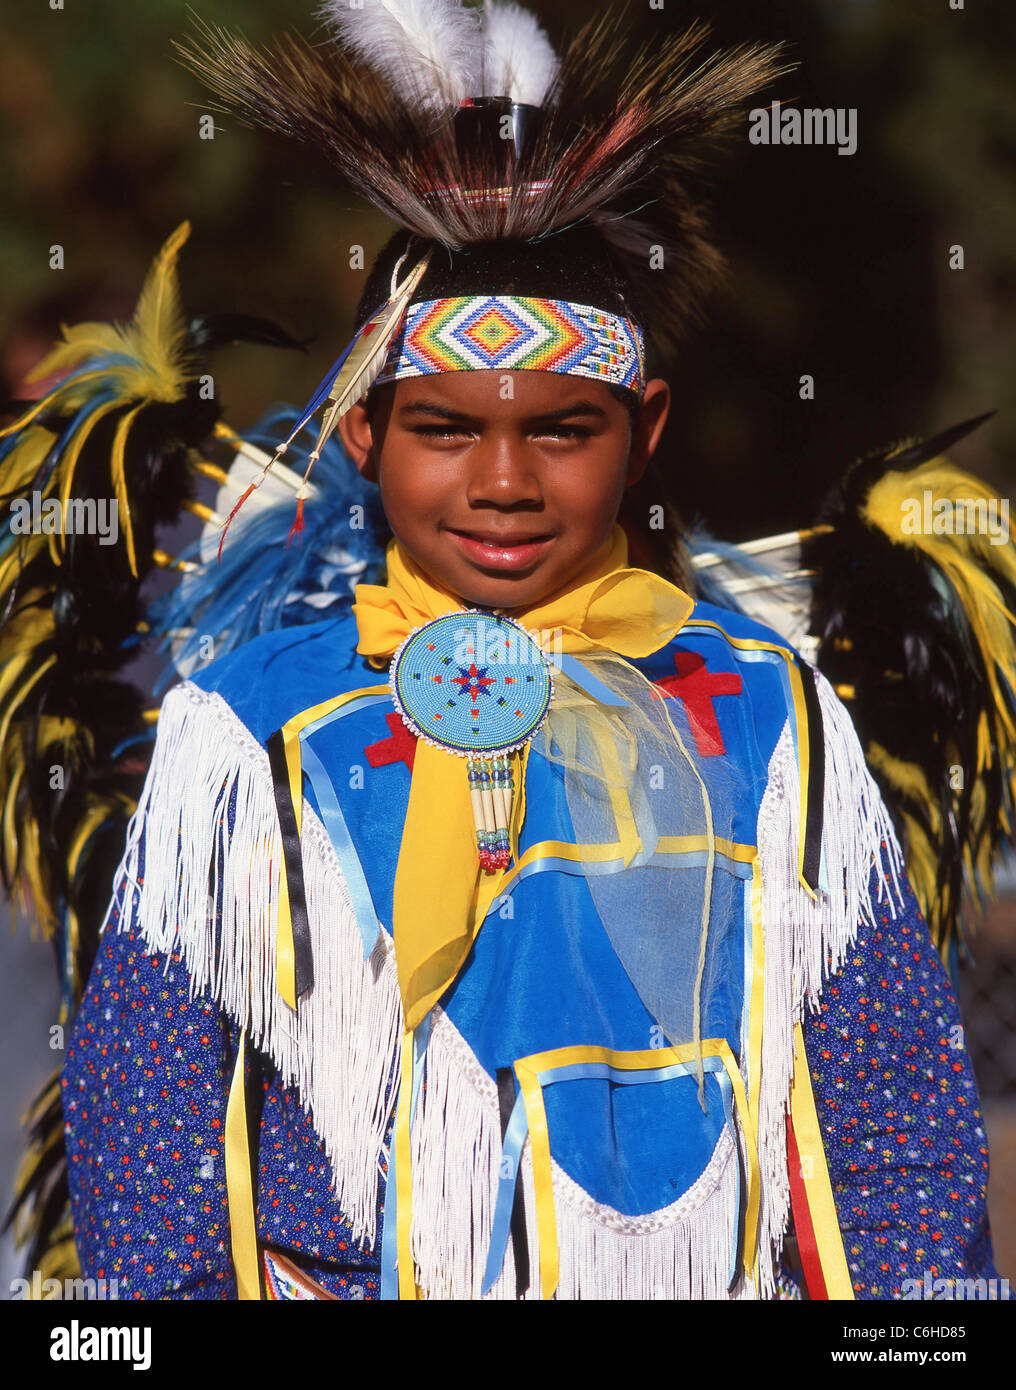 Junge verkleidet als Indianer, Indisch, Nevada, Vereinigte Staaten von Amerika Stockfoto